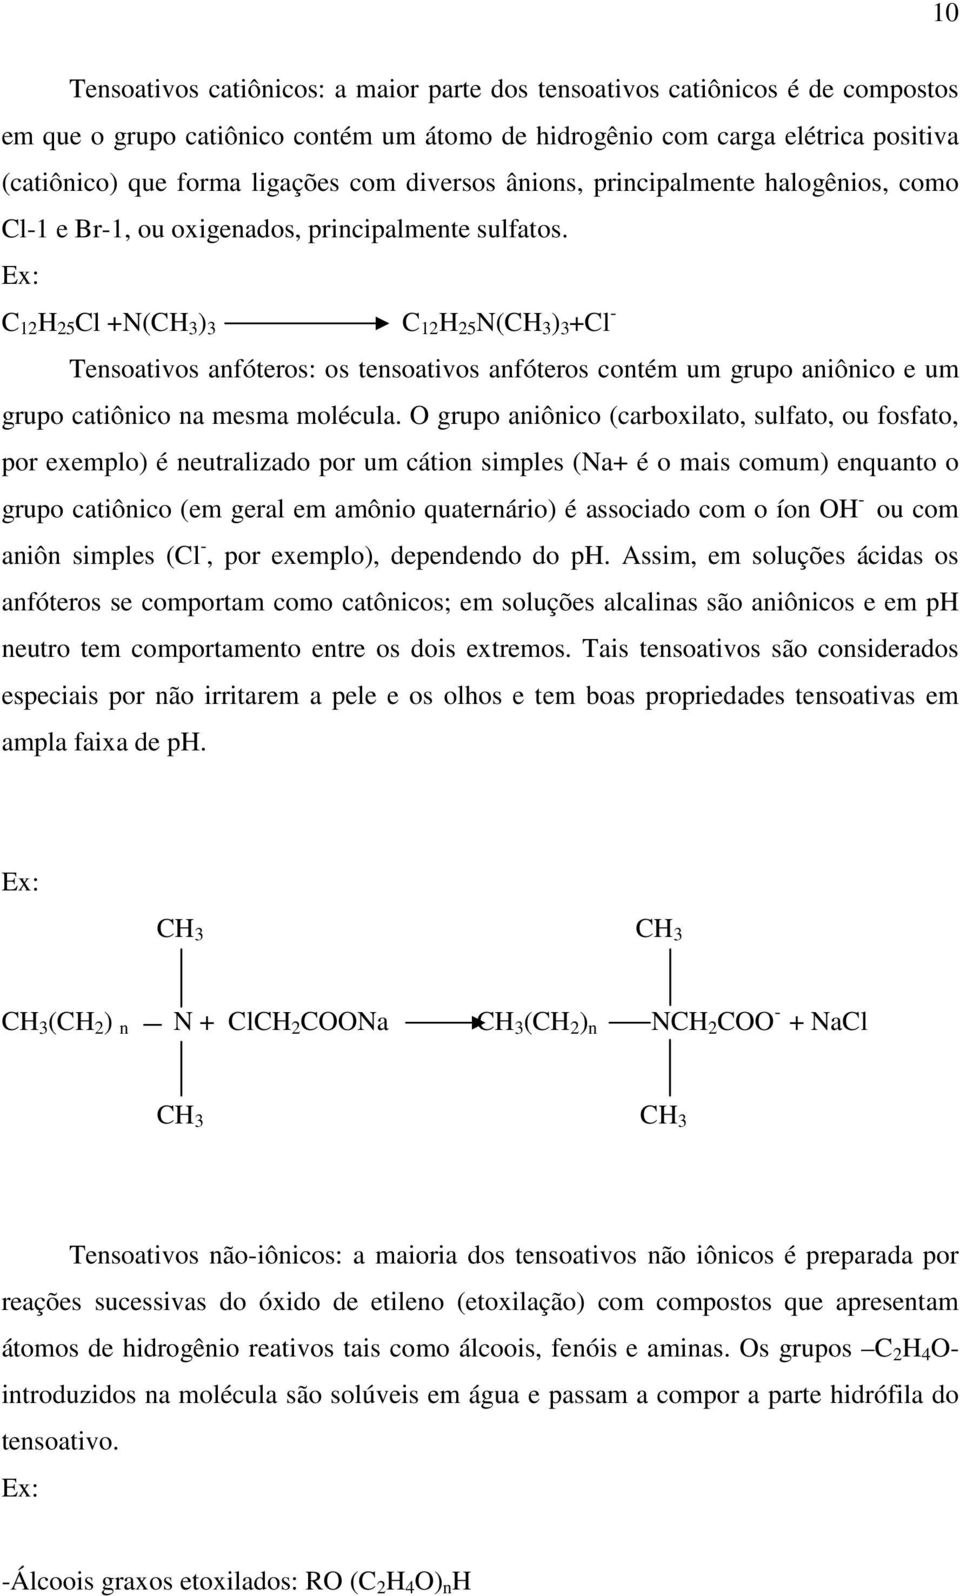 Ex: C 12 H 25 Cl +N(CH 3 ) 3 C 12 H 25 N(CH 3 ) 3 +Cl - Tensoativos anfóteros: os tensoativos anfóteros contém um grupo aniônico e um grupo catiônico na mesma molécula.